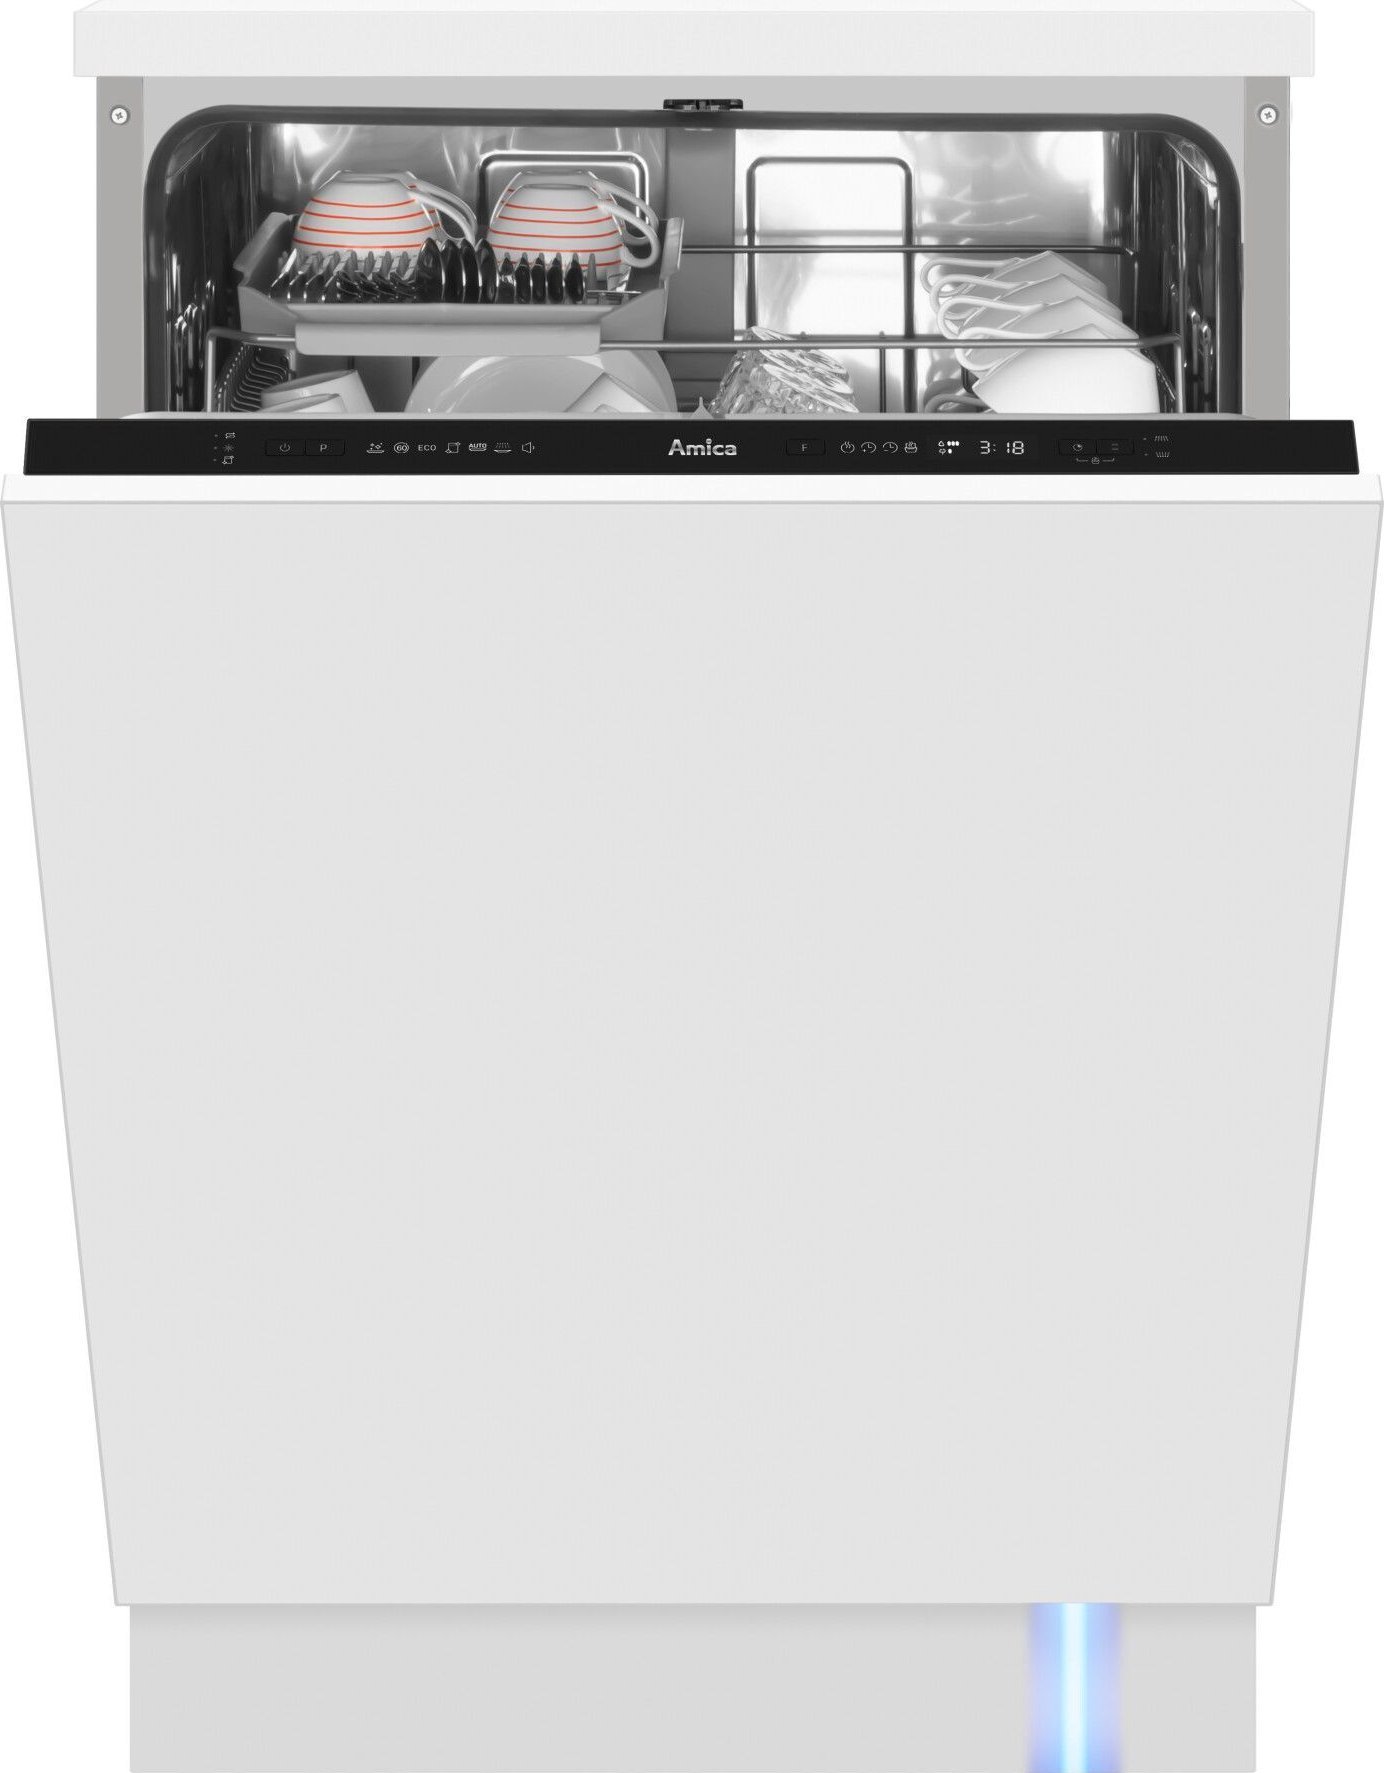 Masini de spalat vase incorporabile - Mașină de spălat vase incorporabila  Amica DIM62C7TBOQH,
14 seturi,
44 dB